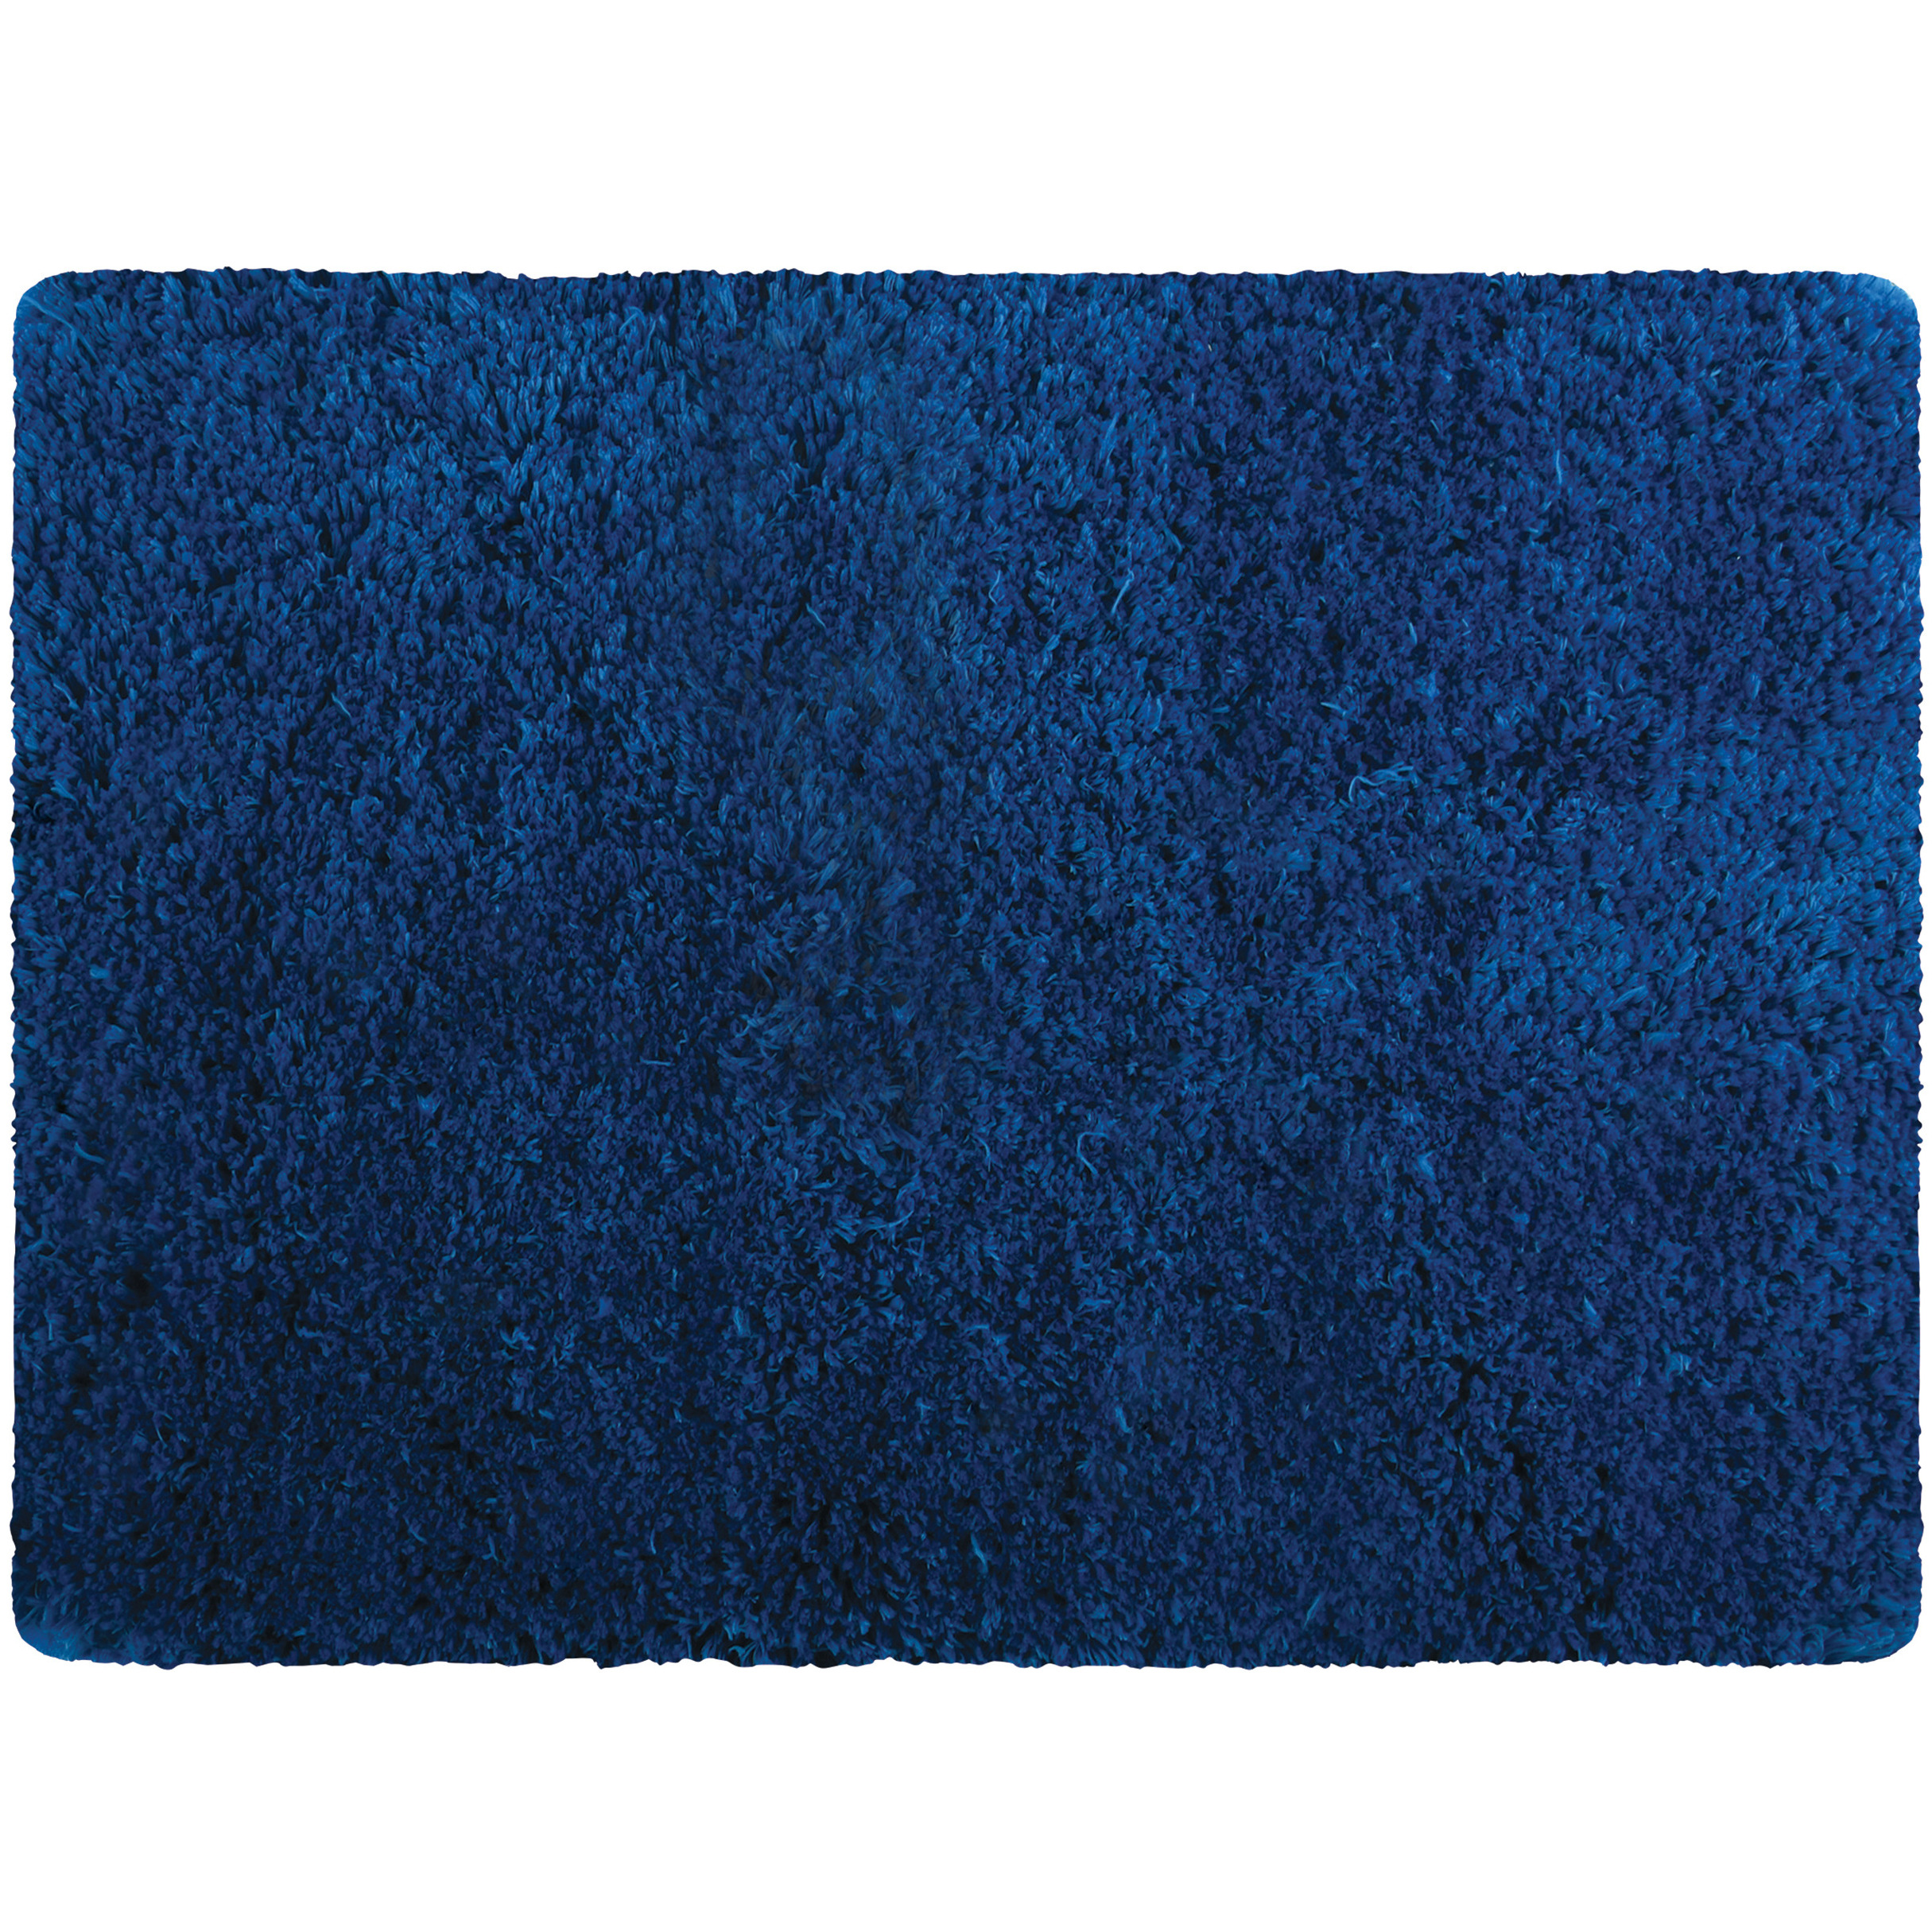 Badkamerkleedje-badmat tapijt voor op de vloer marine blauw 50 x 70 cm langharig